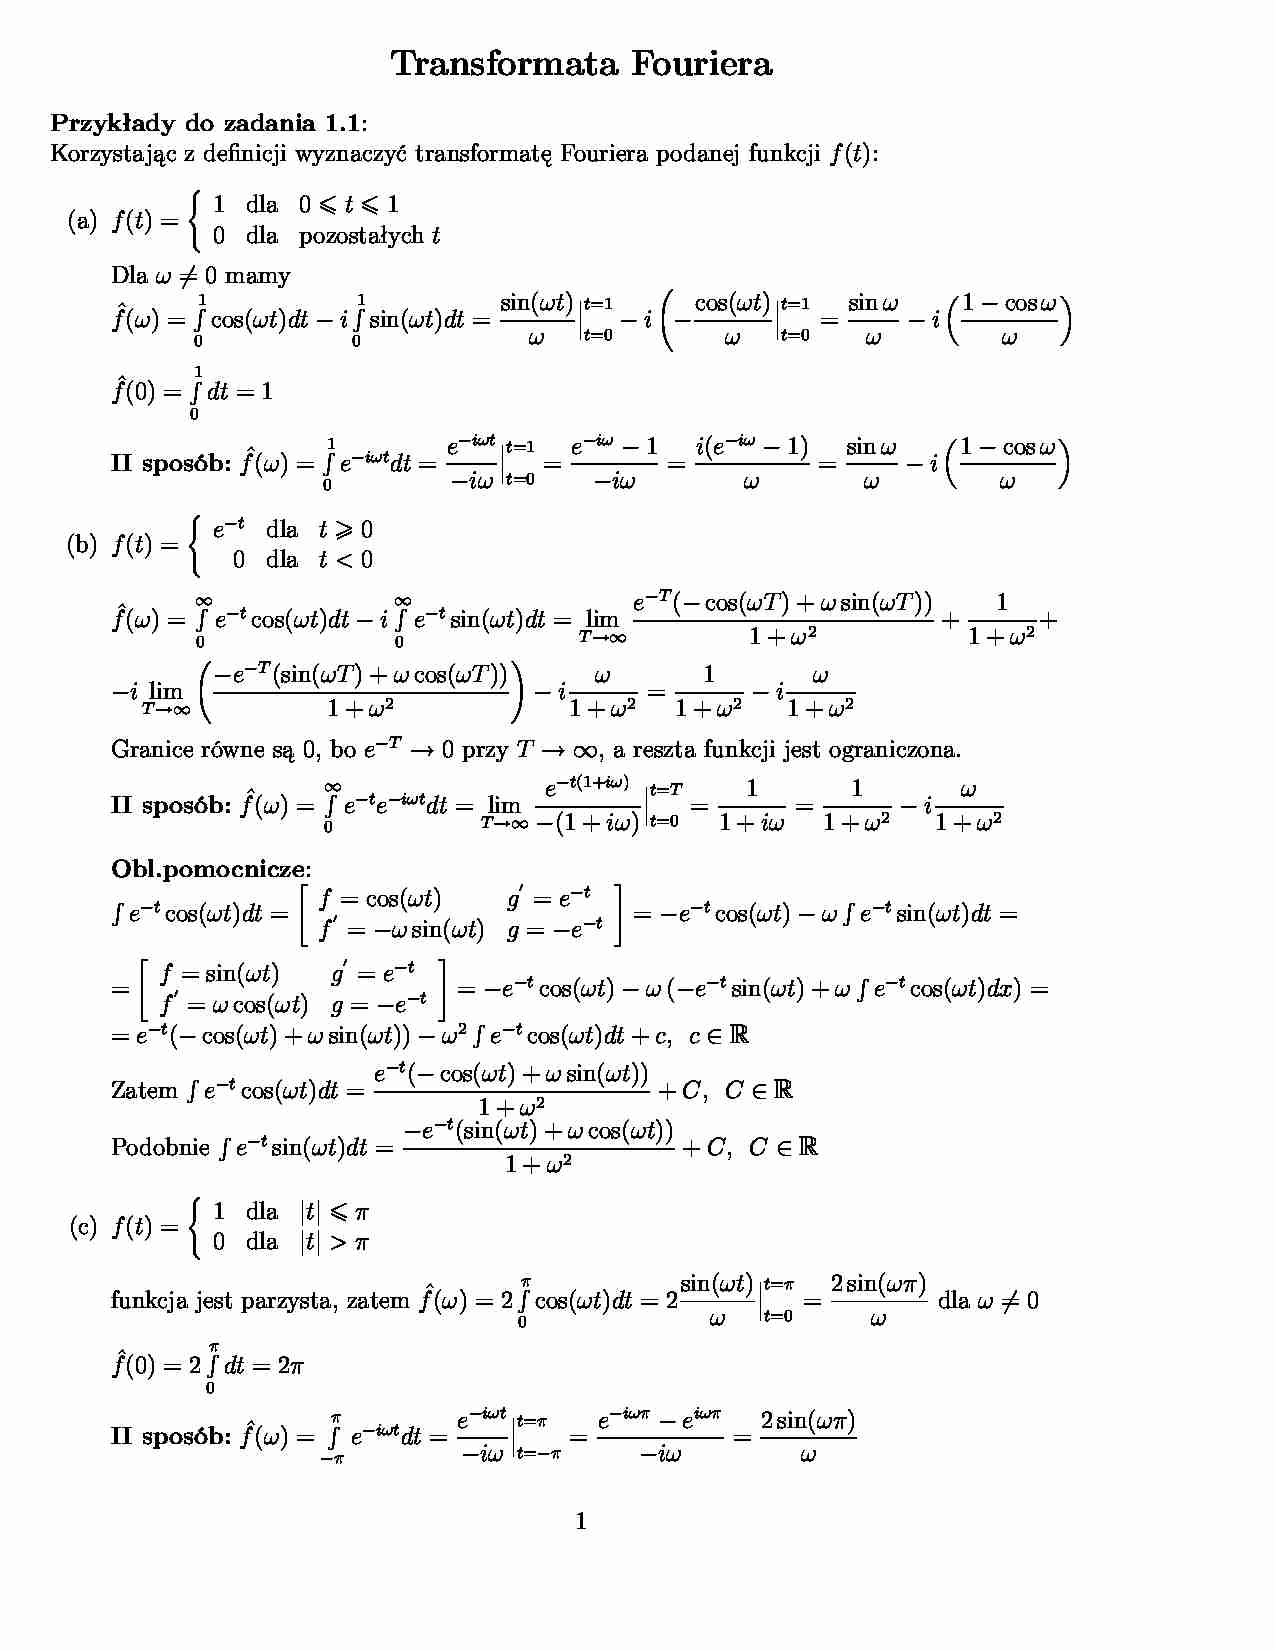 Transformata Fouriera - ćwiczenia - strona 1